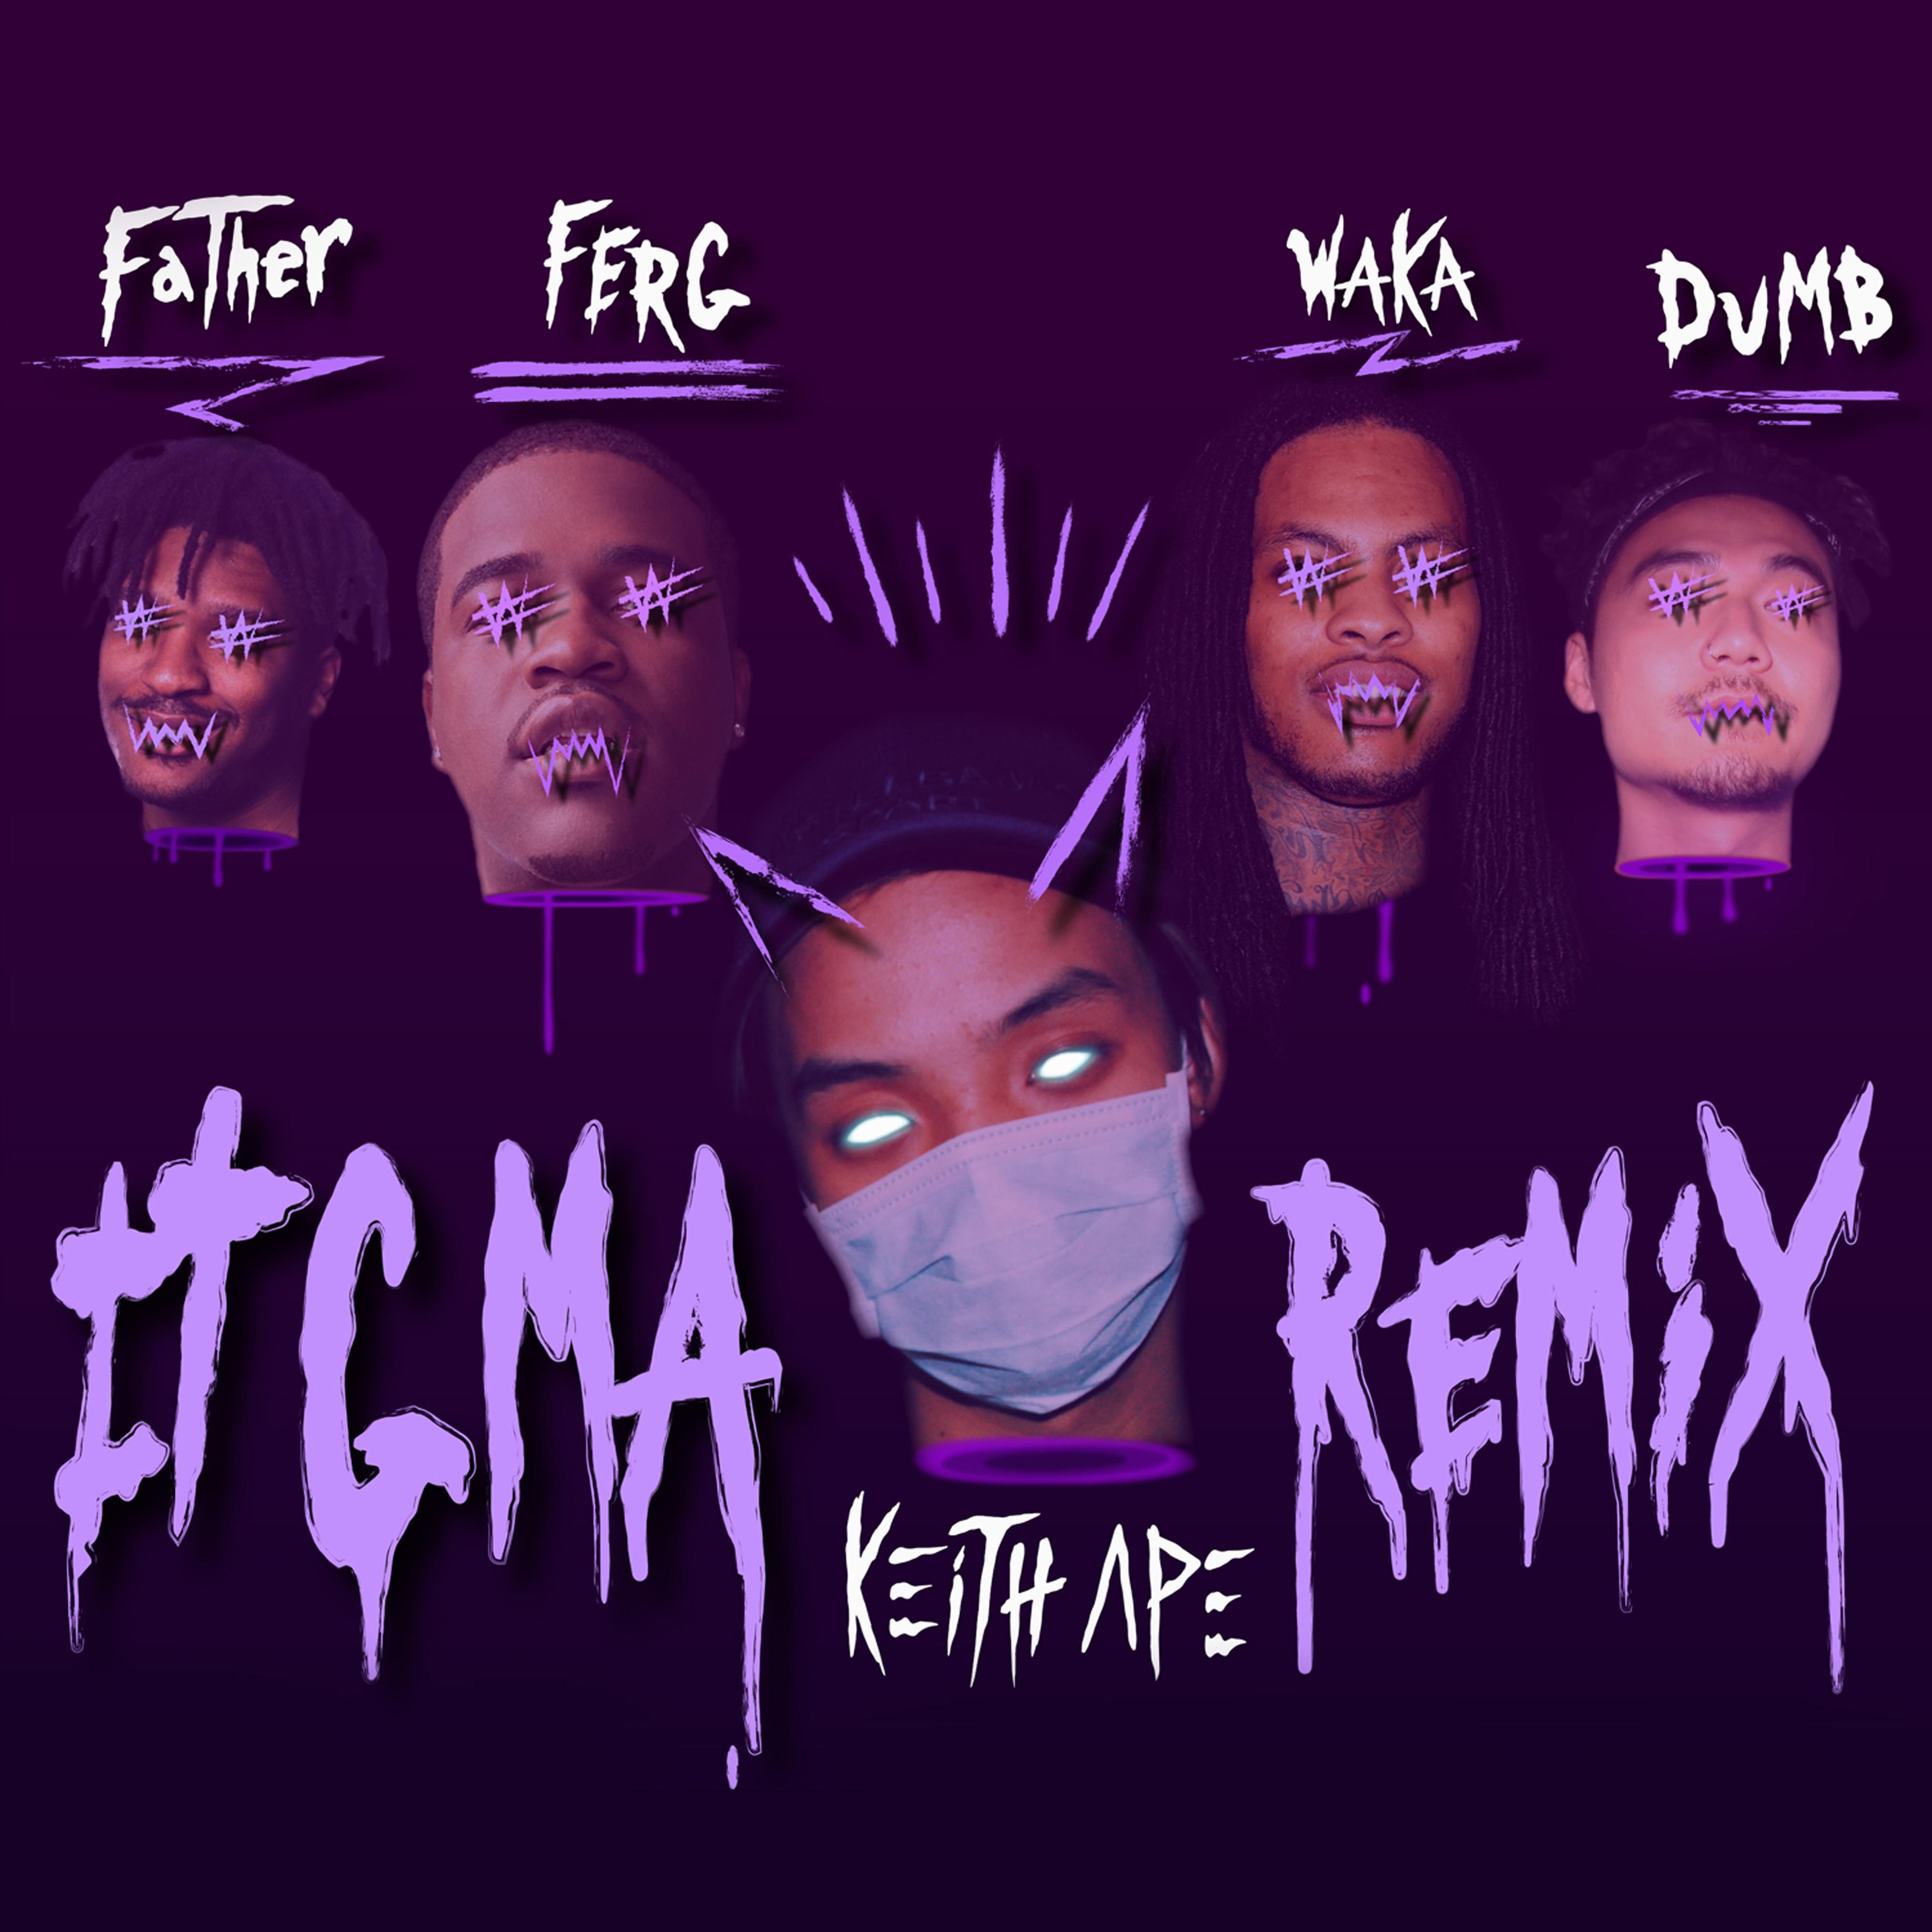 It G Ma (Remix)